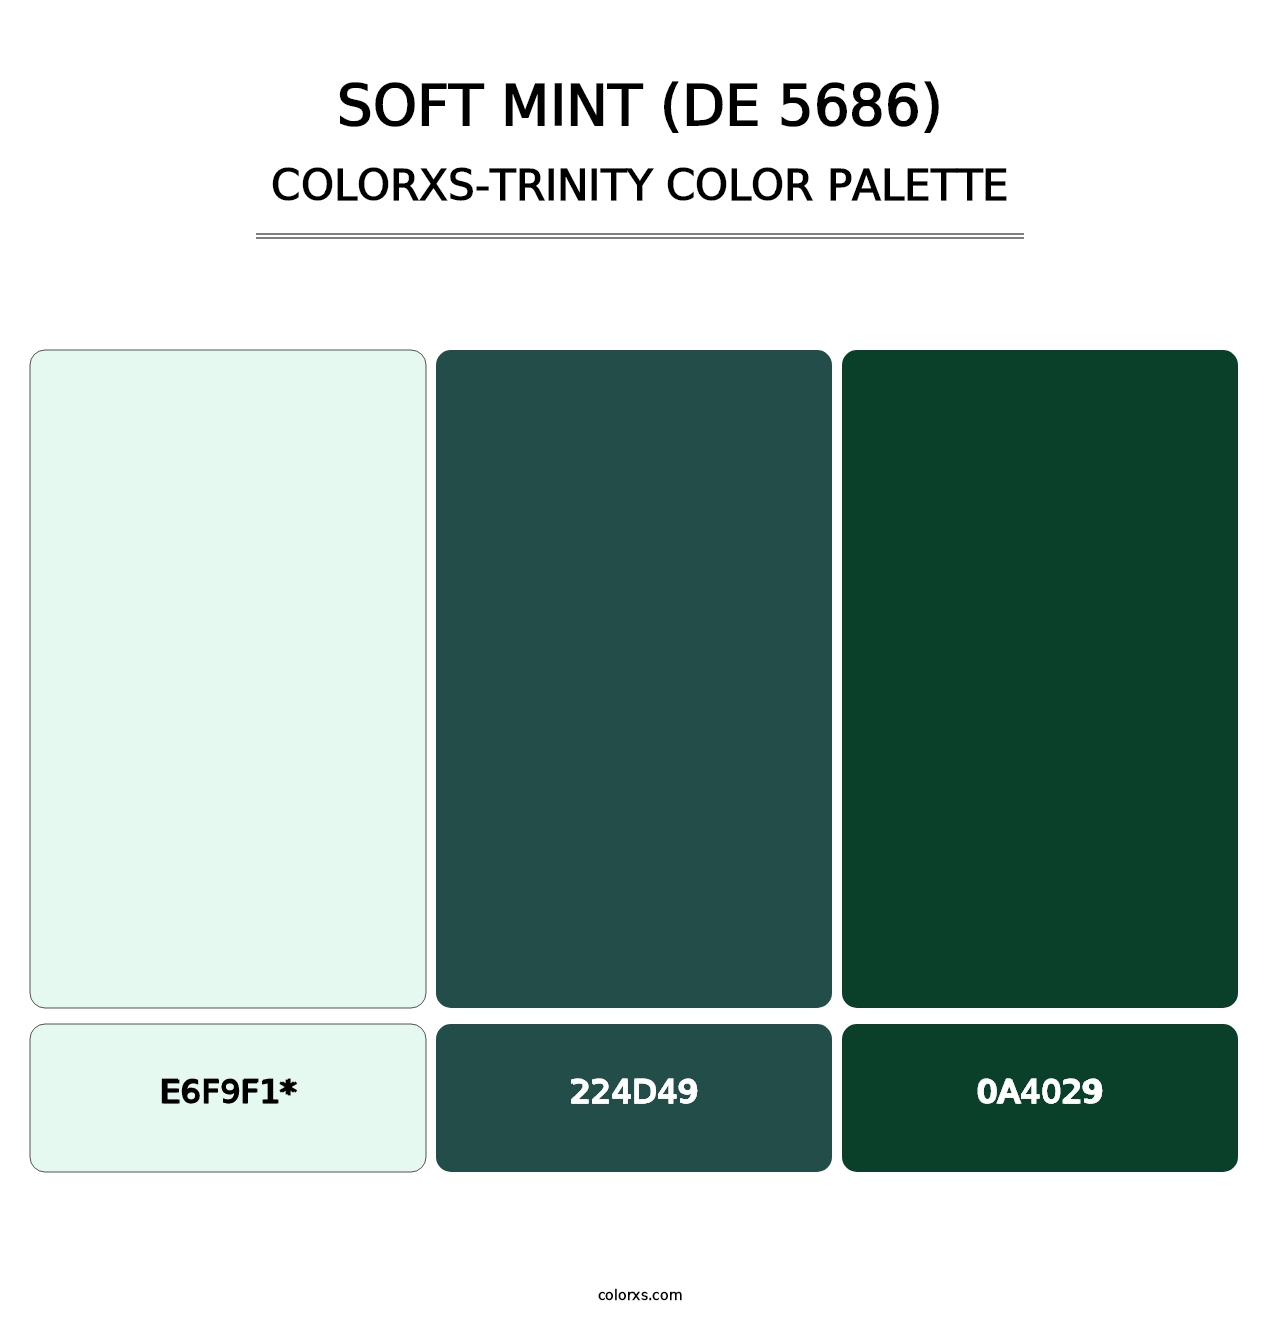 Soft Mint (DE 5686) - Colorxs Trinity Palette